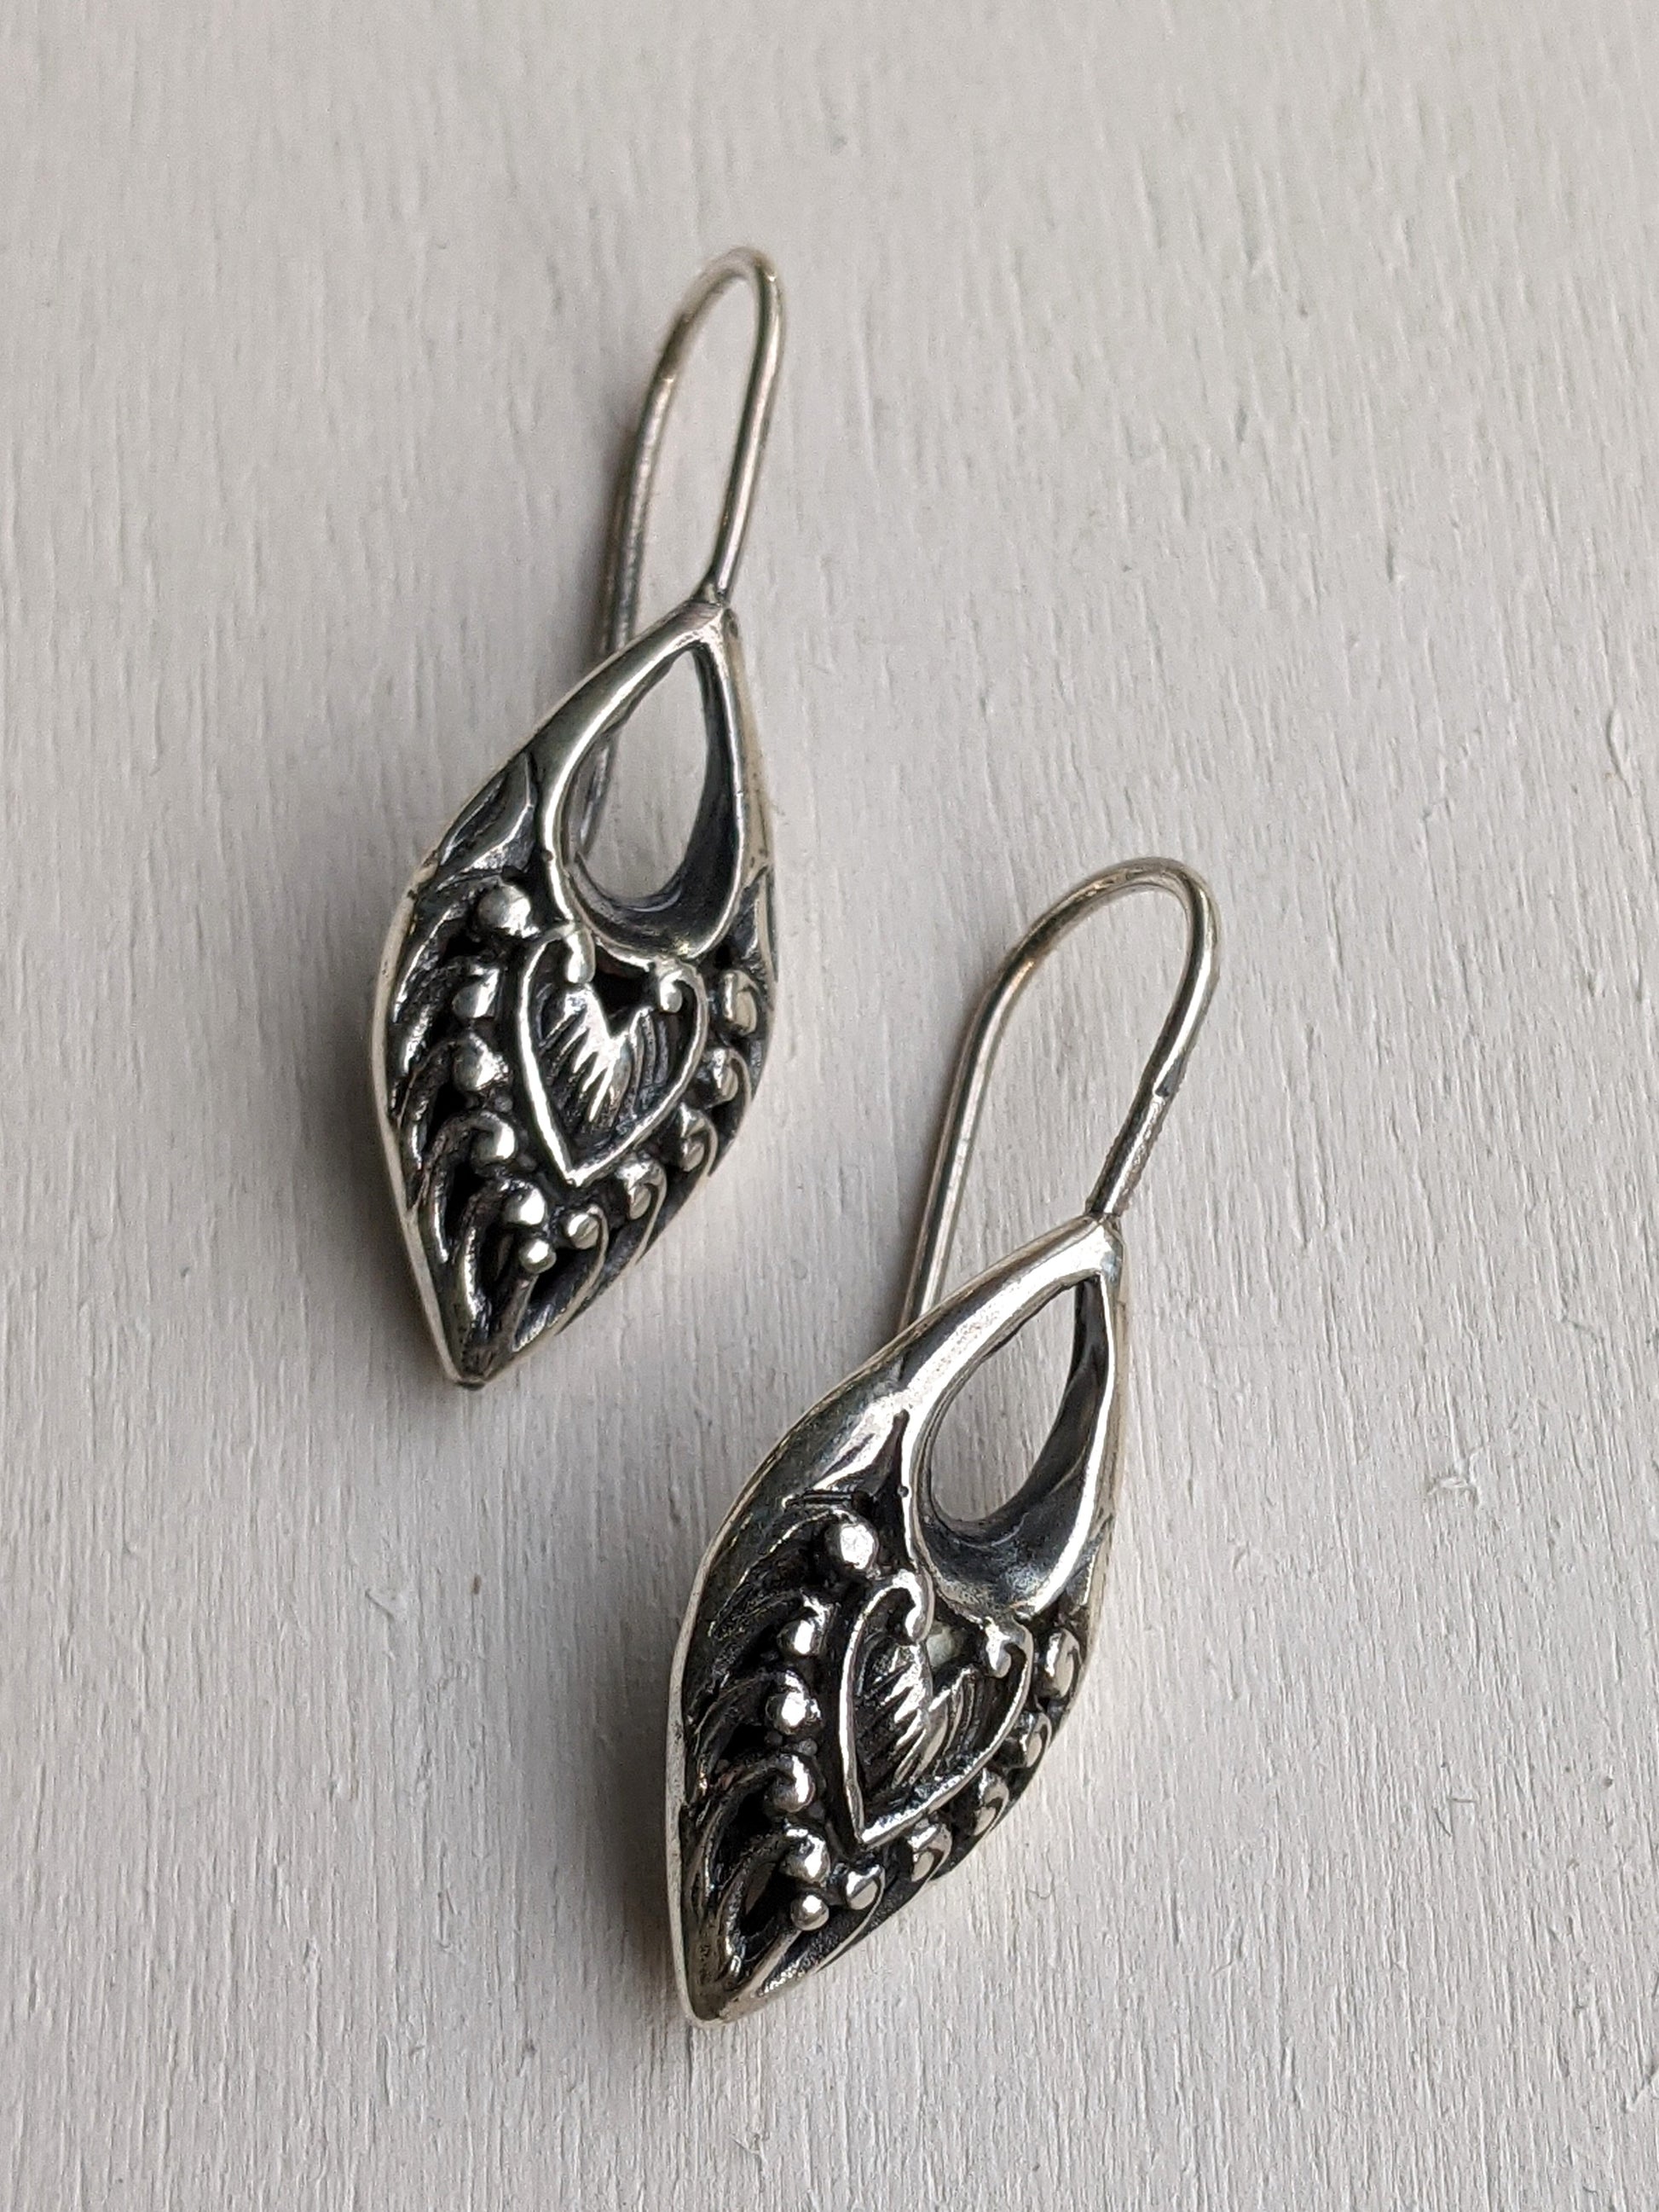 Silver Dagger Style earrings